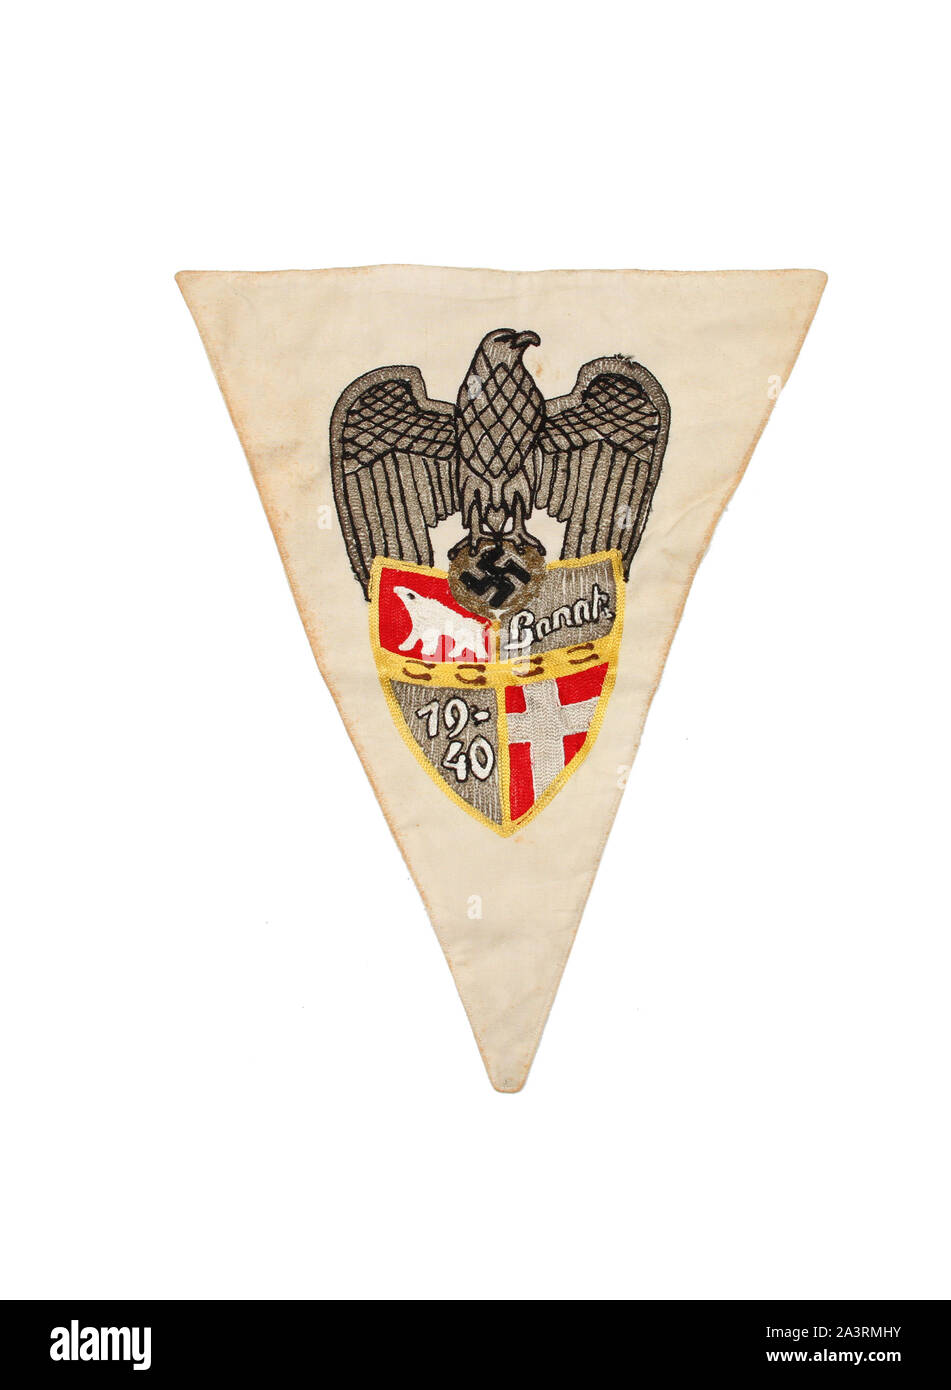 Segunda Guerra Mundial Pennant y patilla, Laponia campaña. Alemán WWII banner con haciendo coincidir la patilla, banner es cosida con brocado y seda. Foto de stock